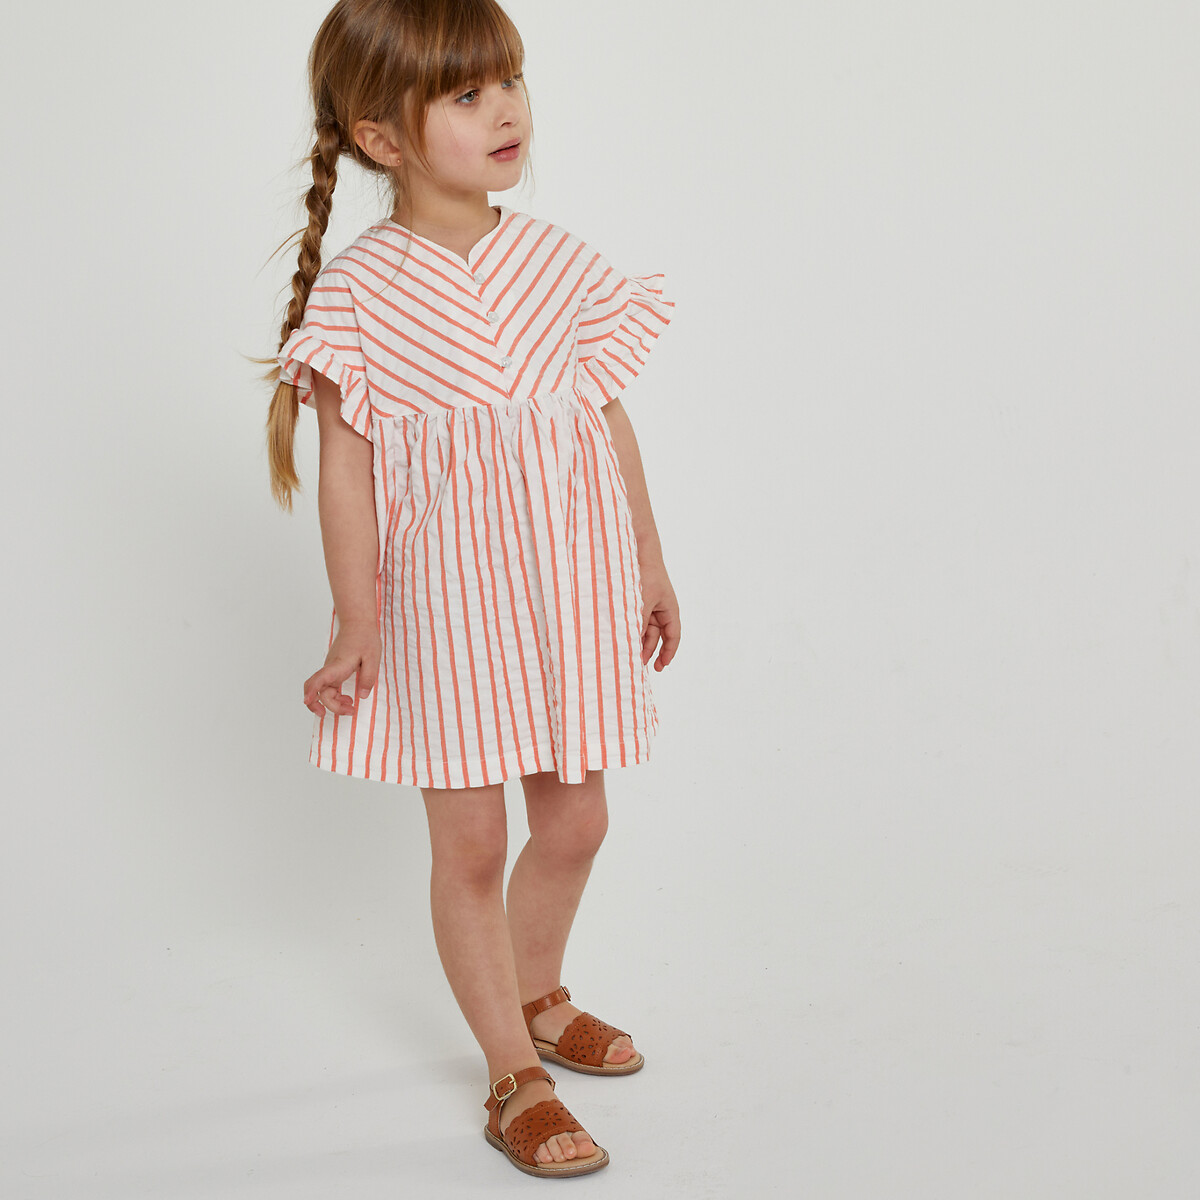 Платье с воланами из легкой полосатой ткани 2 года - 86 см оранжевый платье с воланами из легкой полосатой ткани 2 года 86 см оранжевый